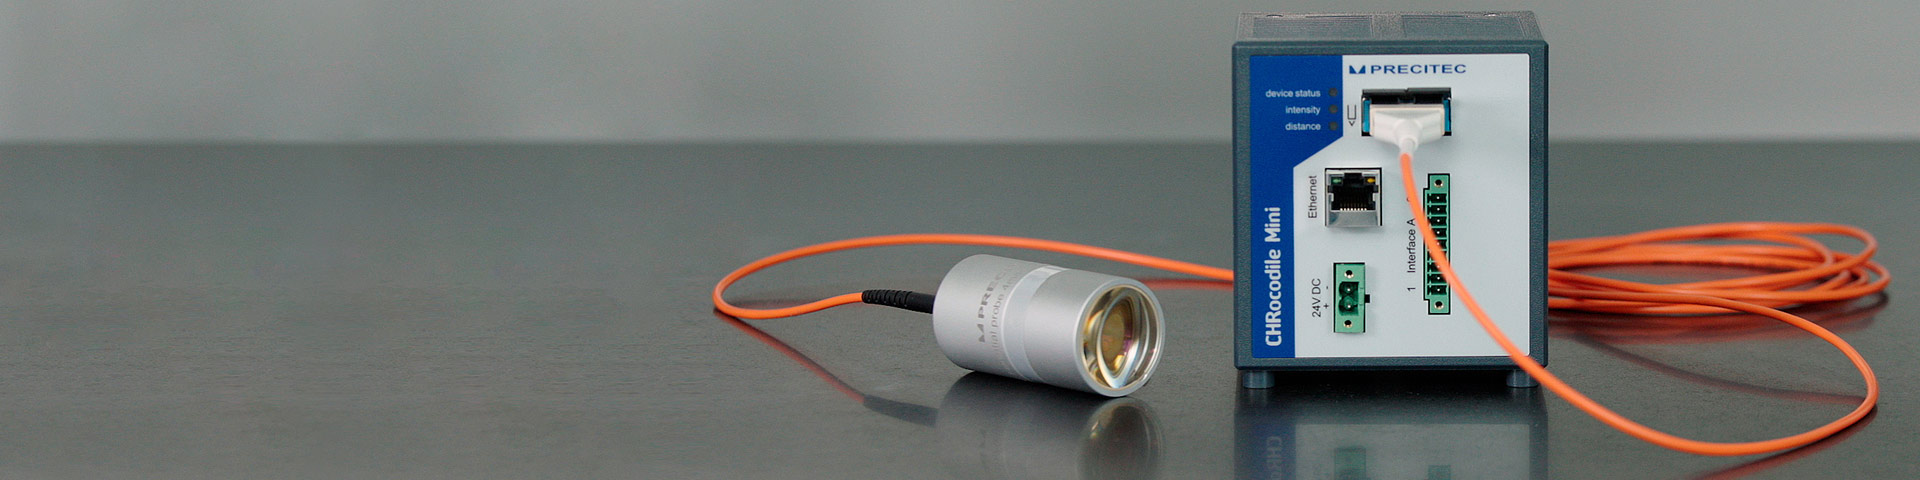 CHRocodile Mini capteur confocal chromatique et sonde